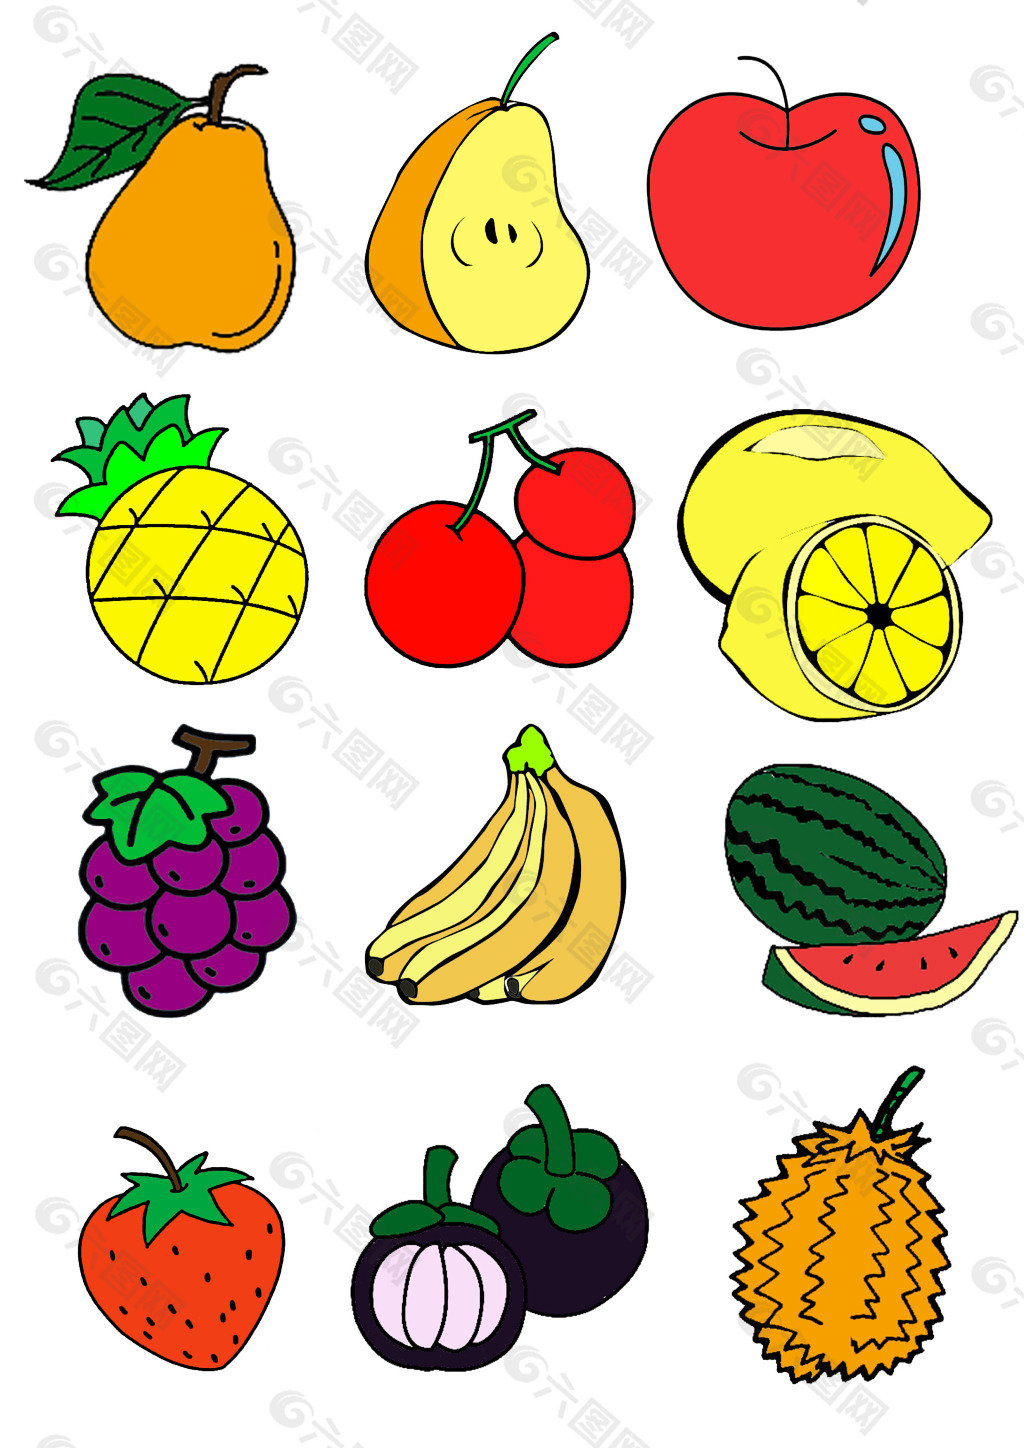 浏览本次作品的您可能还对简笔画,水果,梨子,苹果,菠萝,樱桃,柠檬